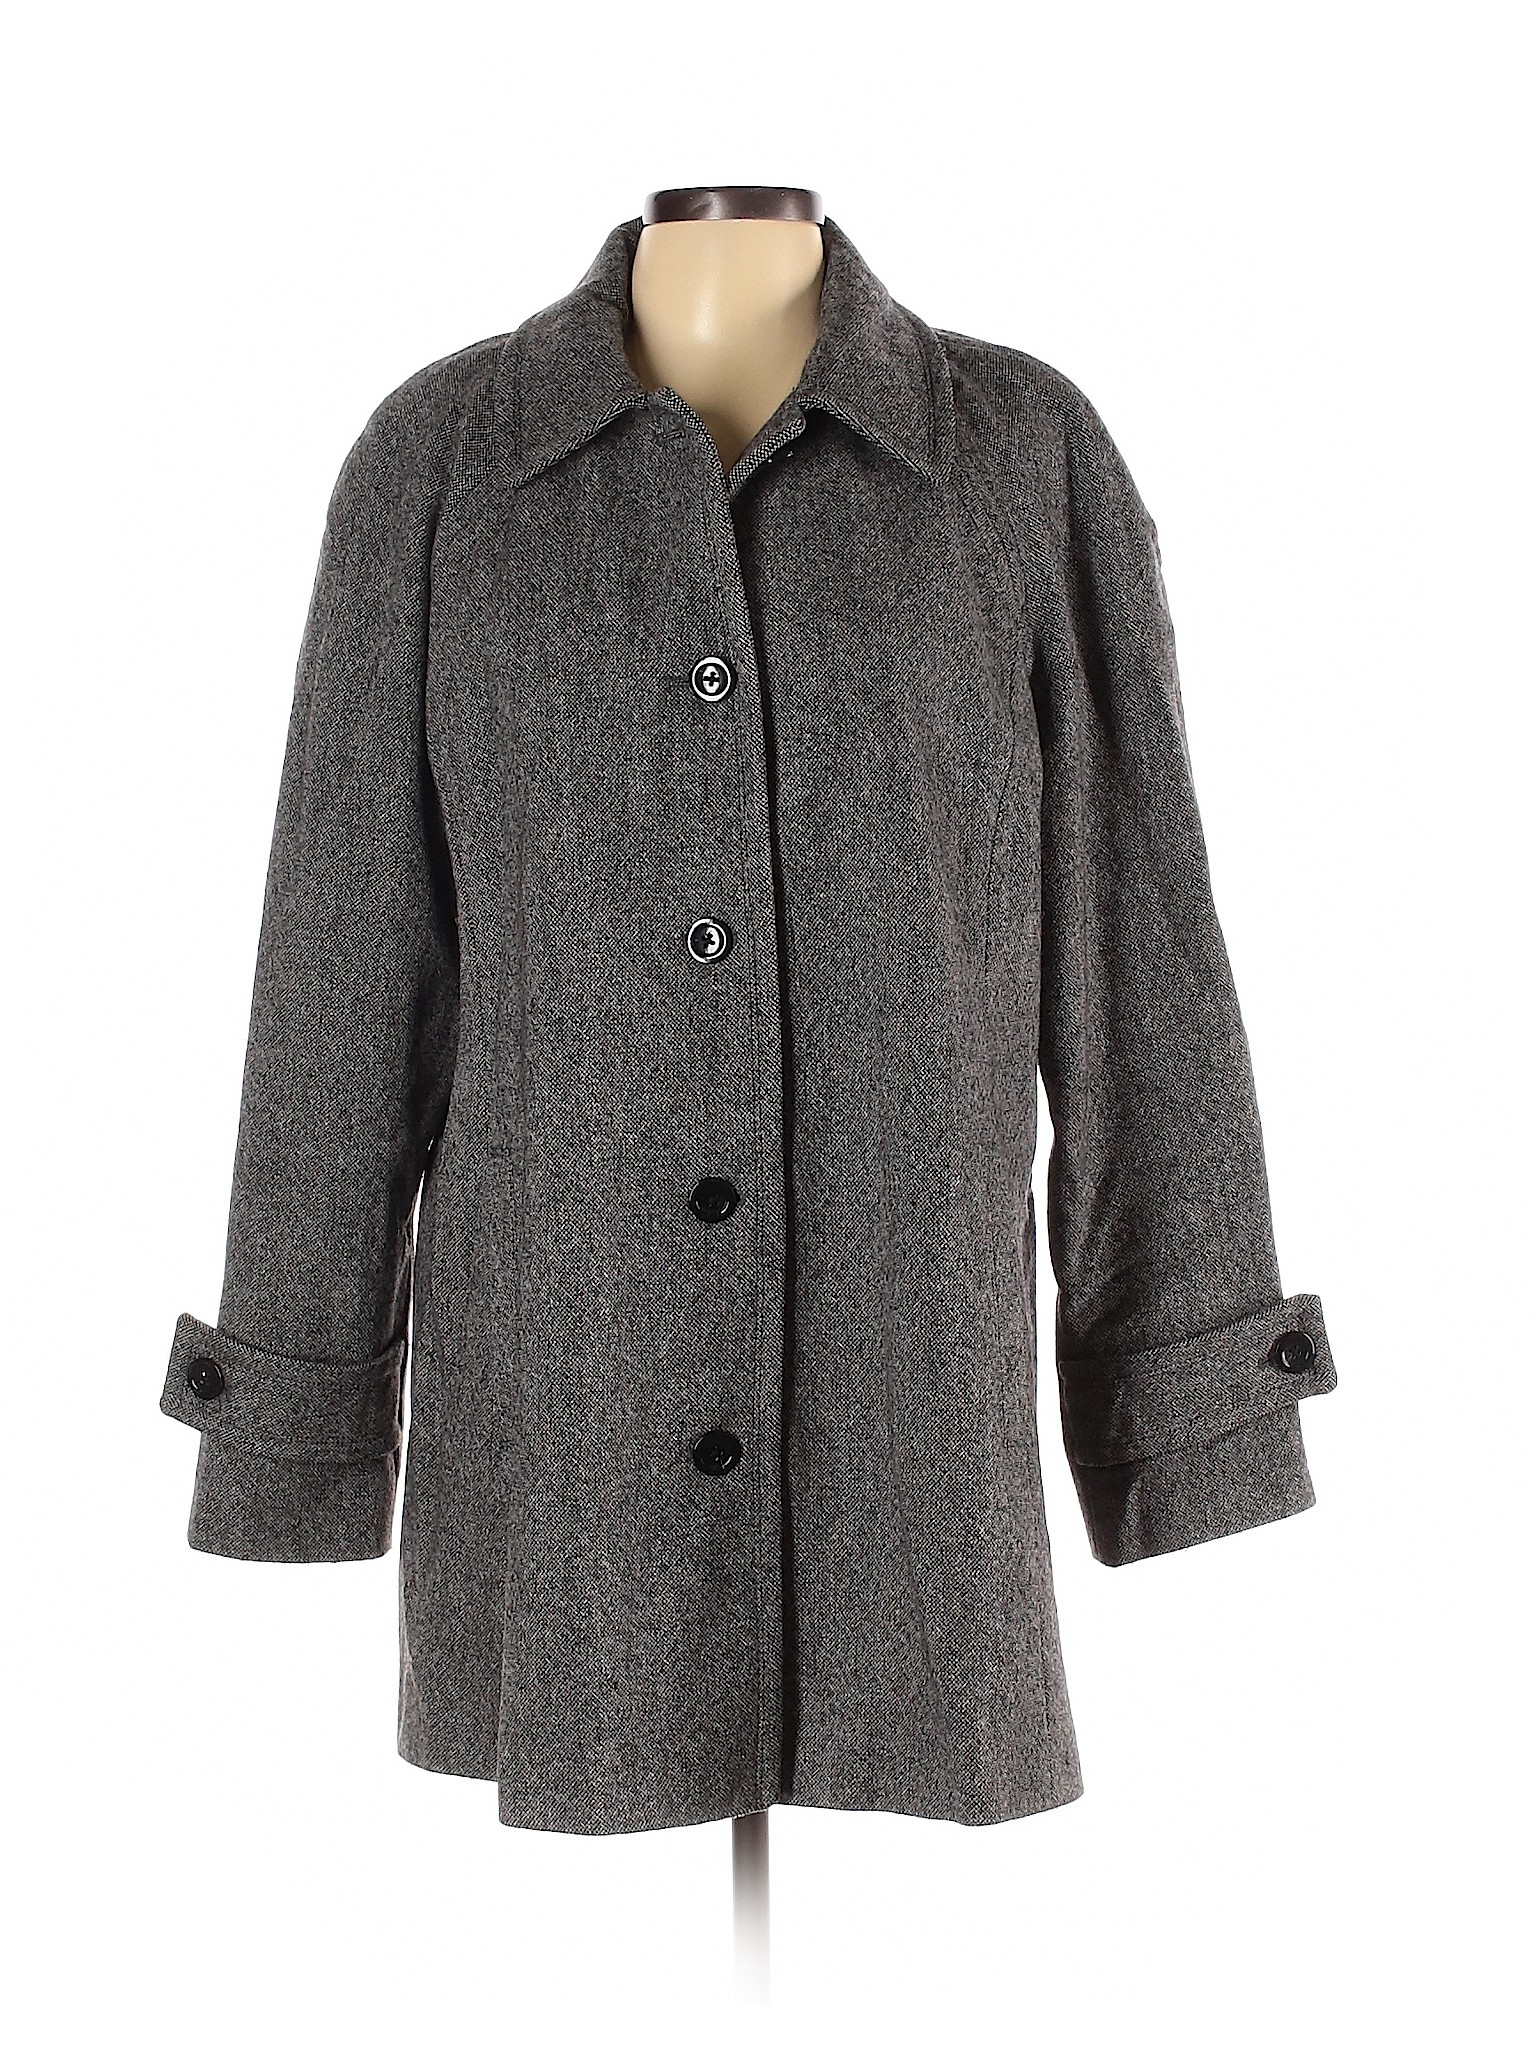 Lands' End Women Gray Wool Coat 16 | eBay